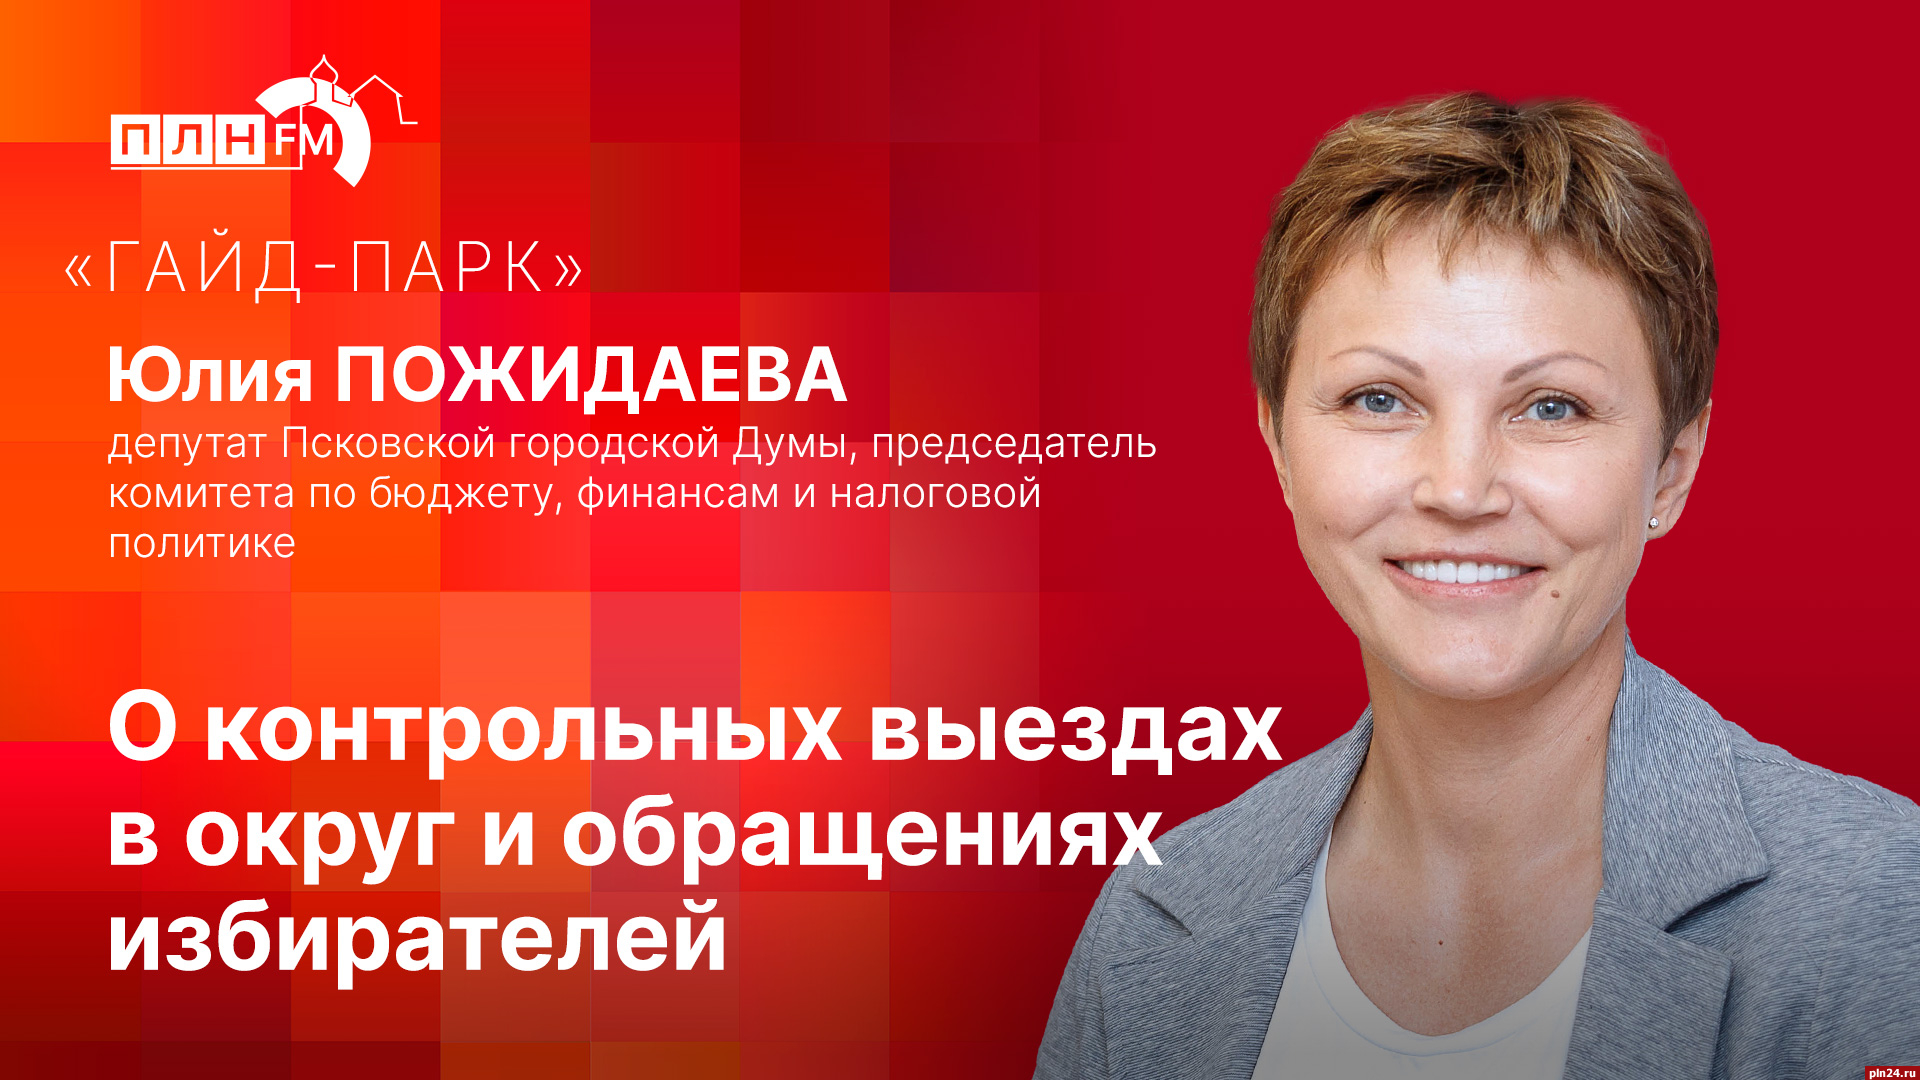 Начинается видеотрансляция программы «Гайд-парк» с депутатом Юлией Пожидаевой